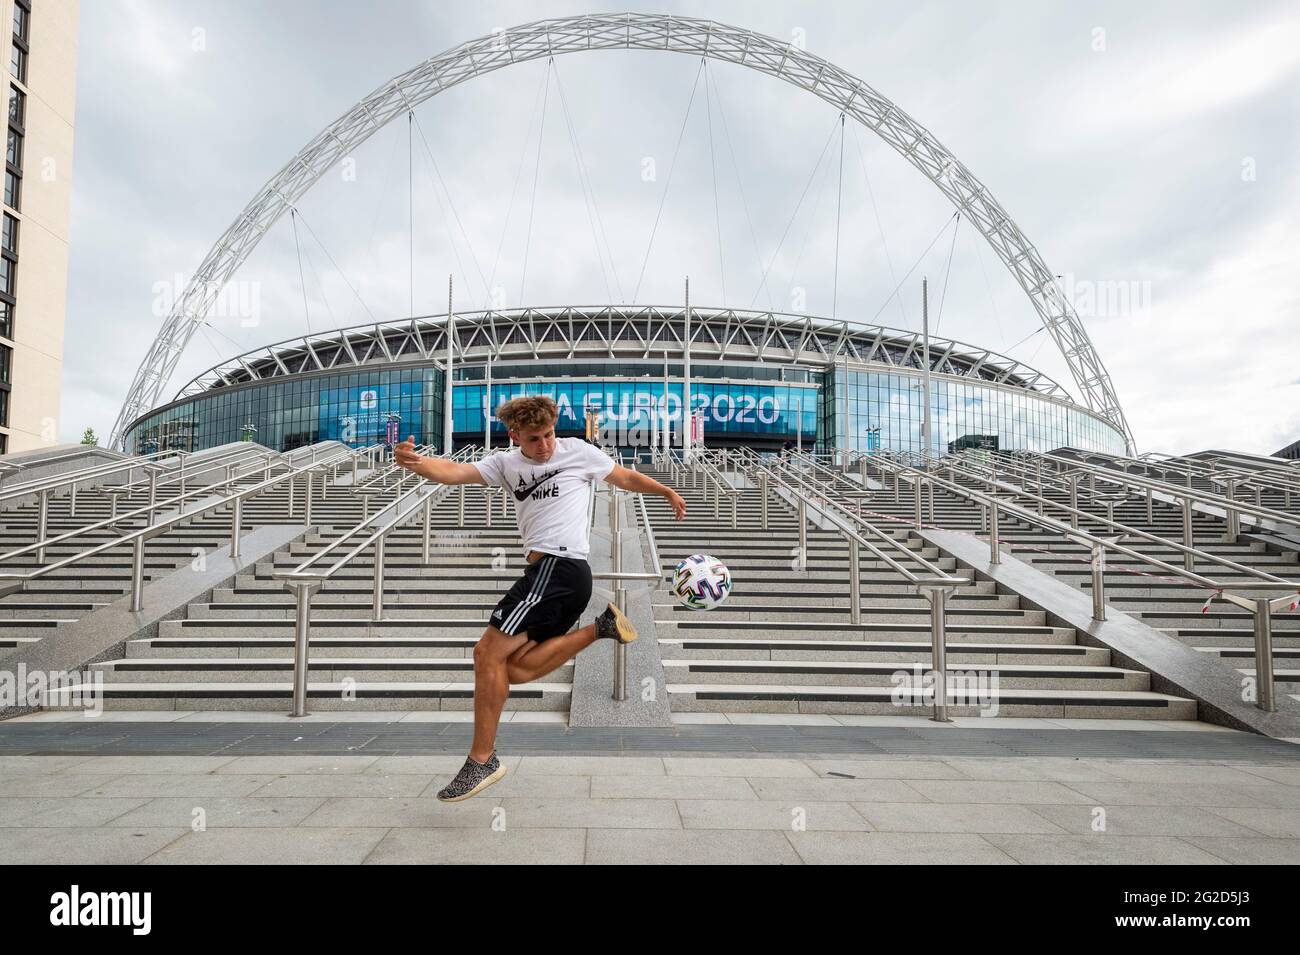 Londres, Royaume-Uni. 10 juin 2021. L'ambassadeur de l'euro 2020, Scott Penders, pratique le jonglage avec un football à l'extérieur du stade Wembley pour le prochain championnat européen de football de l'UEFA 2020, où il se déroulera sur le terrain de Wembley pour les matchs de l'Angleterre et la finale. Le tournoi a été reporté de 2020 en raison de la pandémie de COVID-19 en Europe et reporté du 11 juin au 11 juillet 2021 avec des matchs à jouer dans 11 villes. Le stade Wembley accueillera certains matchs de groupe, dont l'Angleterre et la Croatie, le 13 juin, ainsi que les demi-finales et la finale elle-même. Credit: Stephen Chung / Alamy Live News Banque D'Images